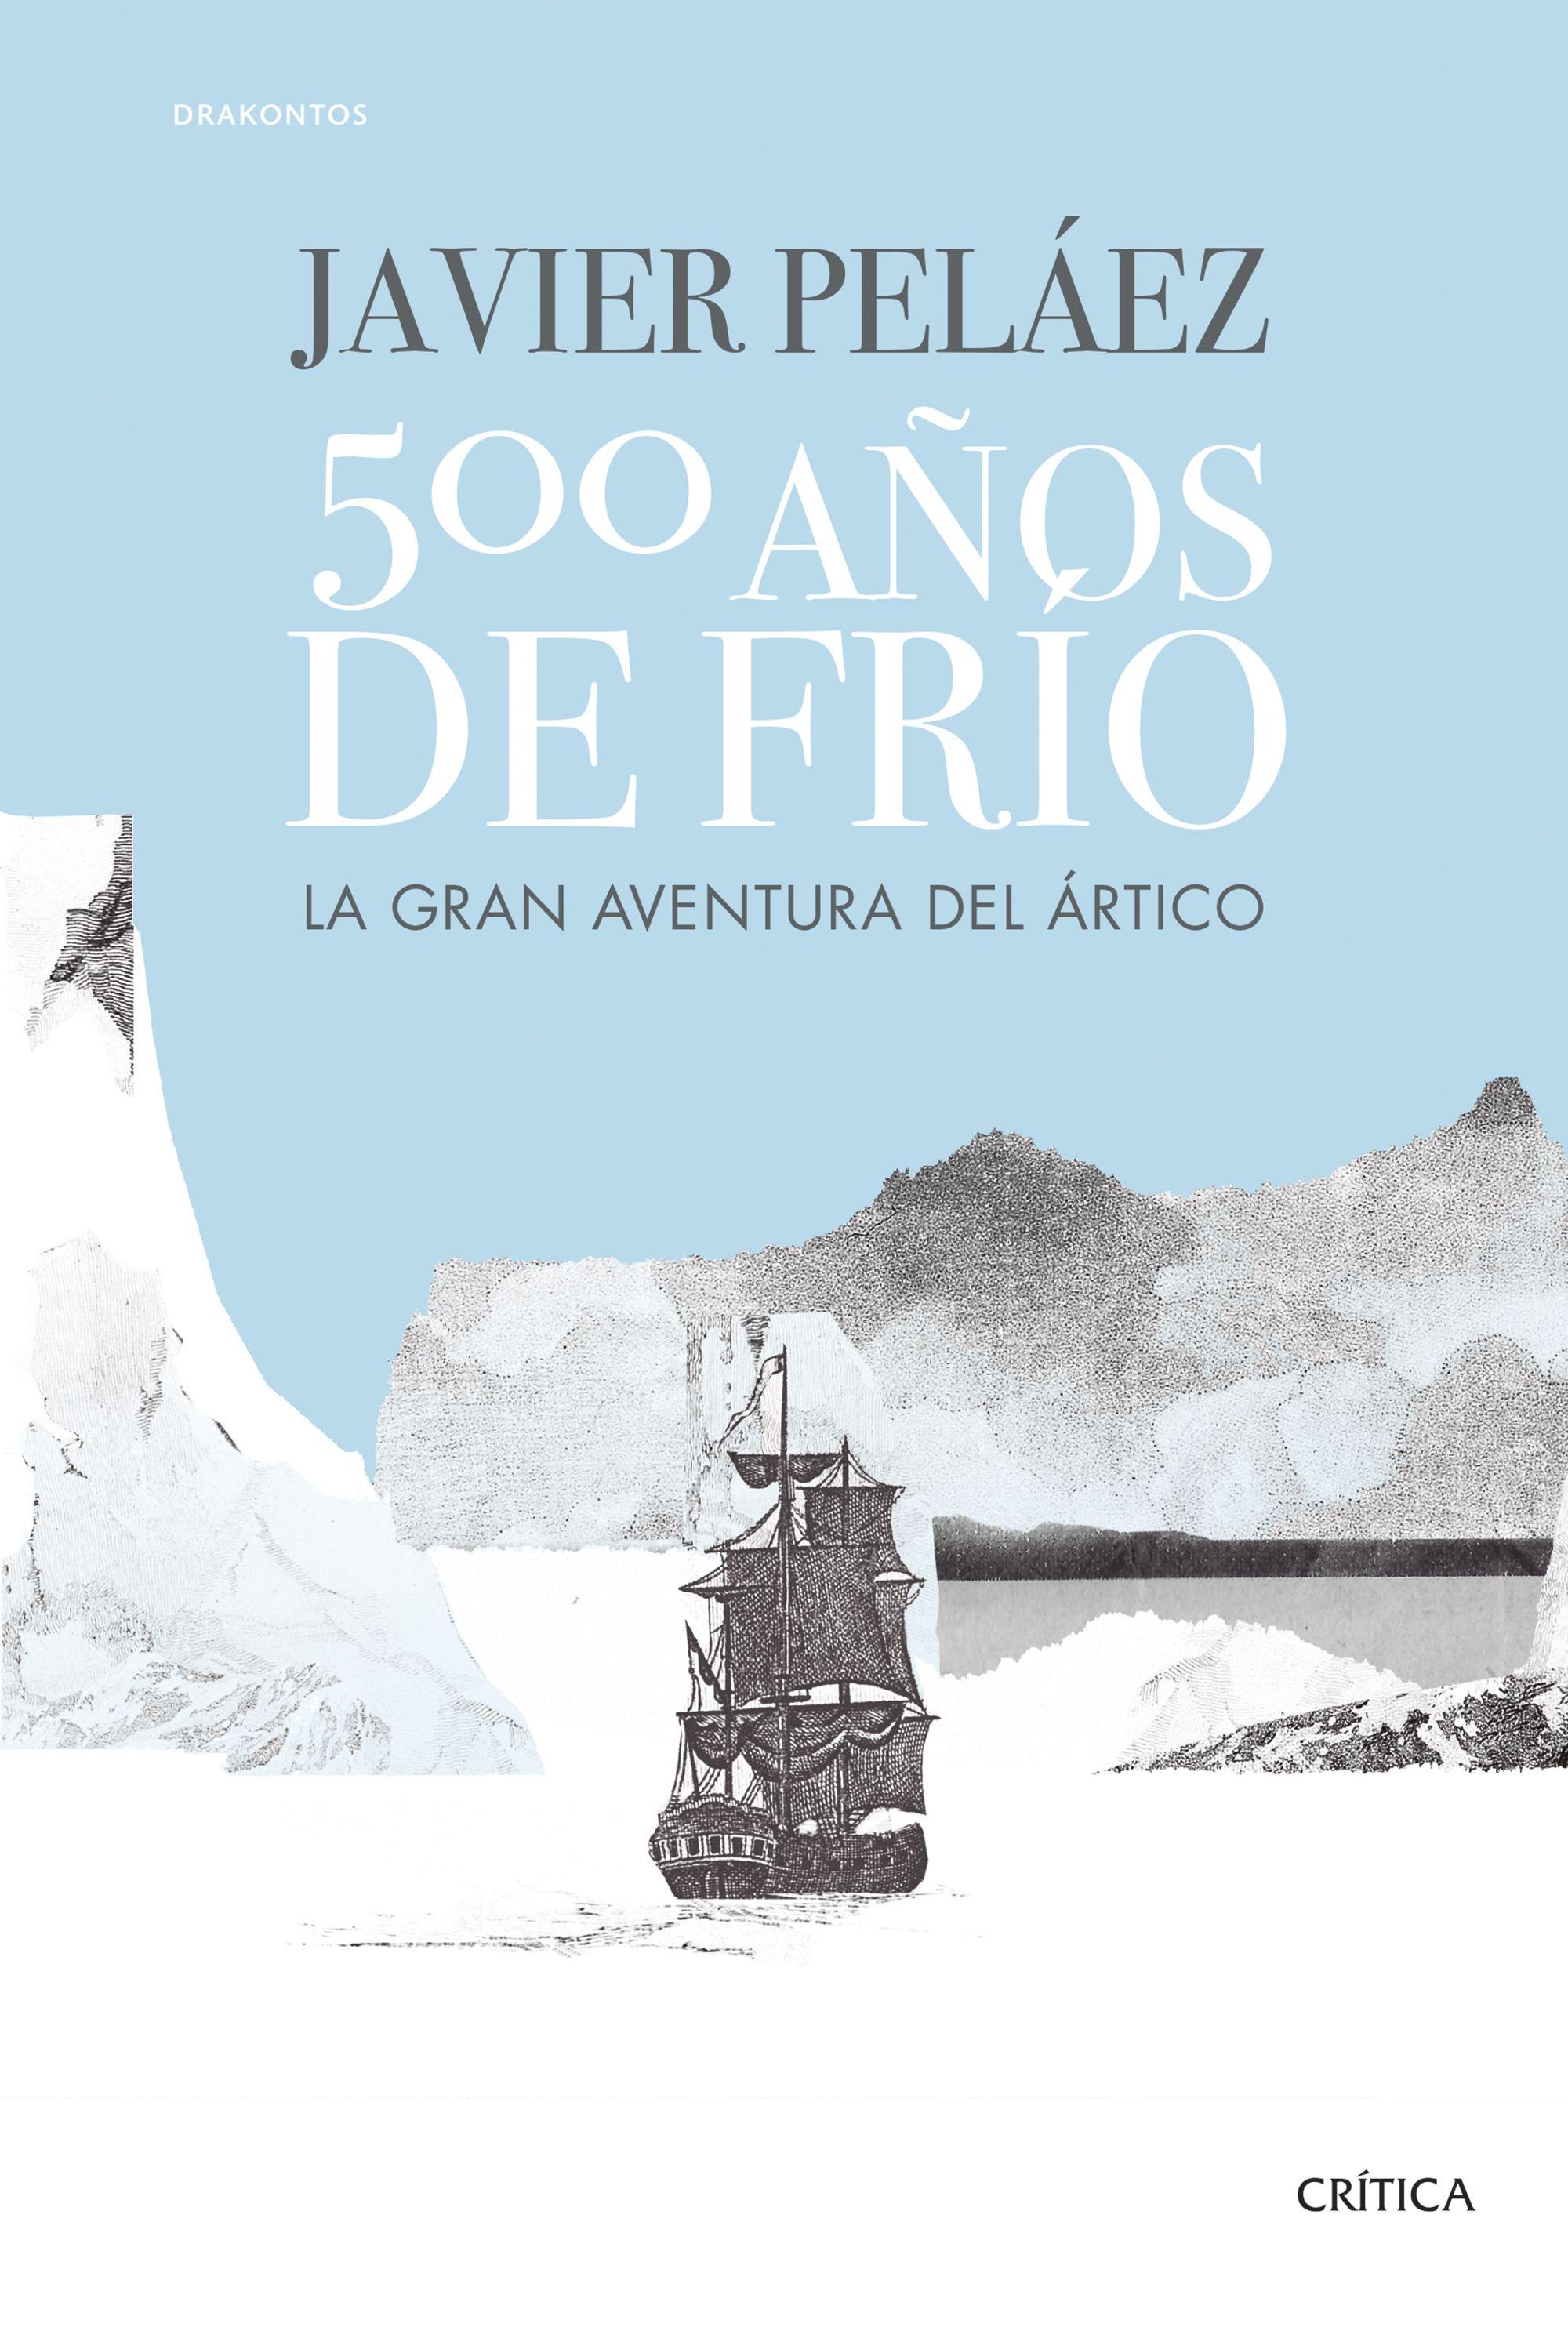 500 Años de Frío "La Gran Aventura del Ártico"